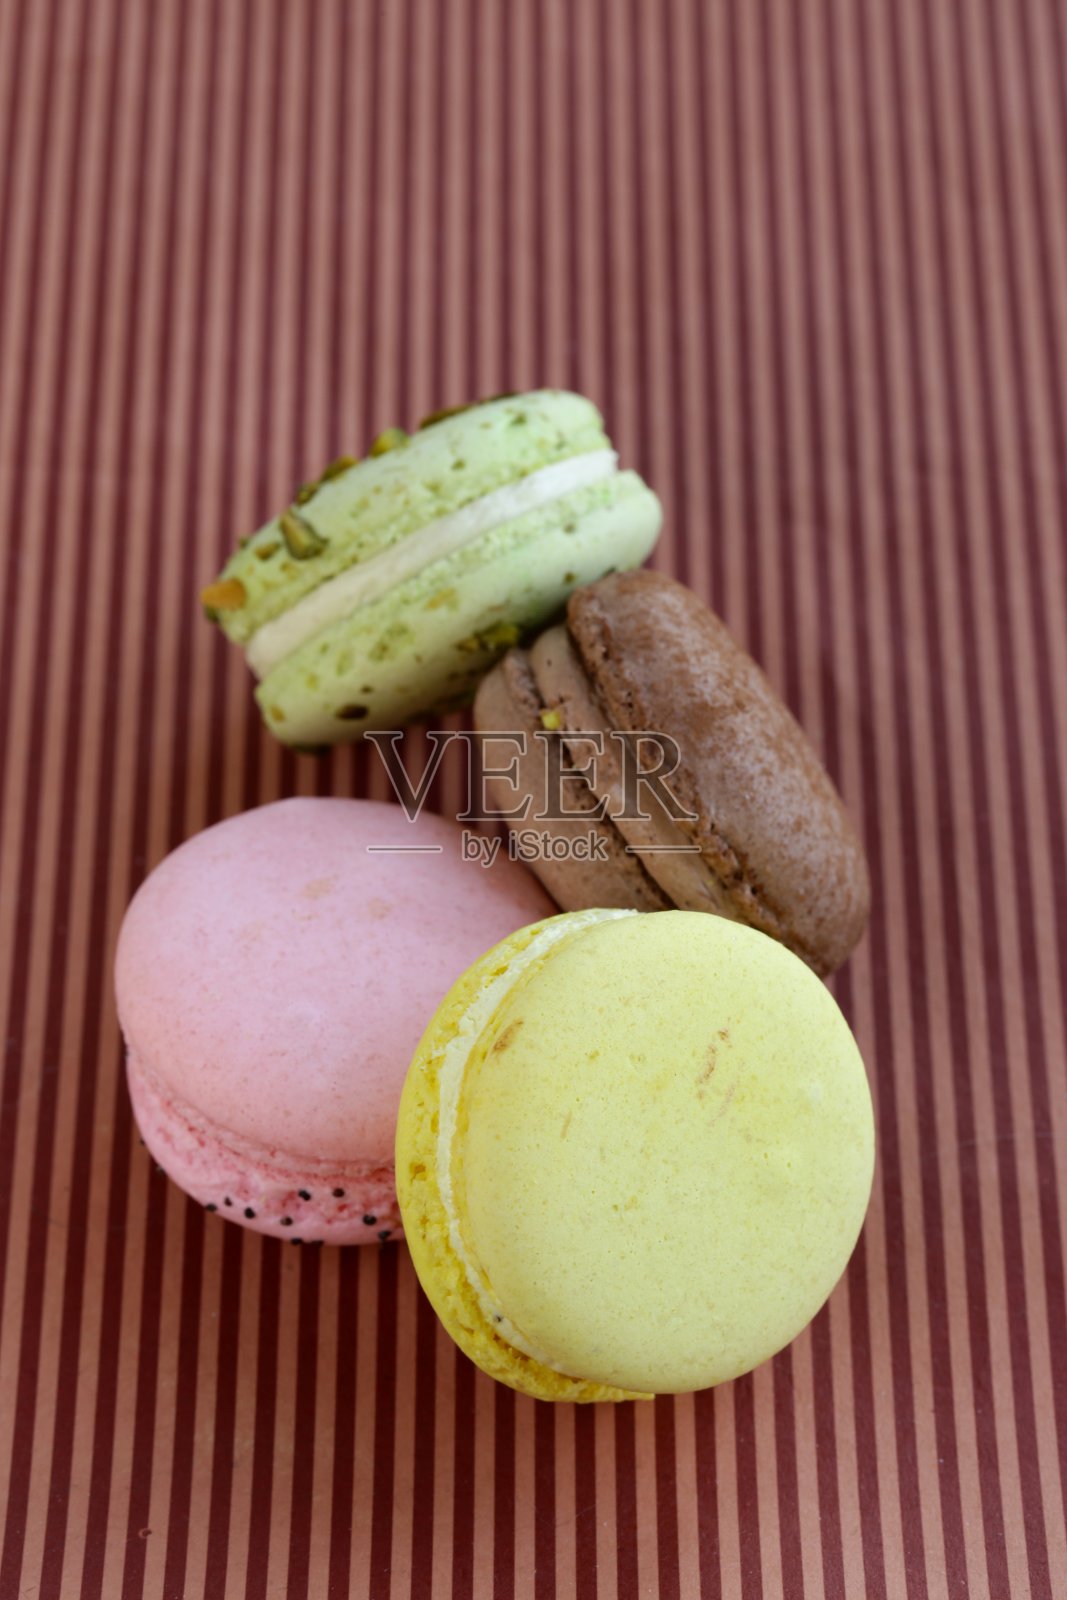 不同颜色的杏仁饼干(开心果、覆盆子、巧克力、香草)照片摄影图片